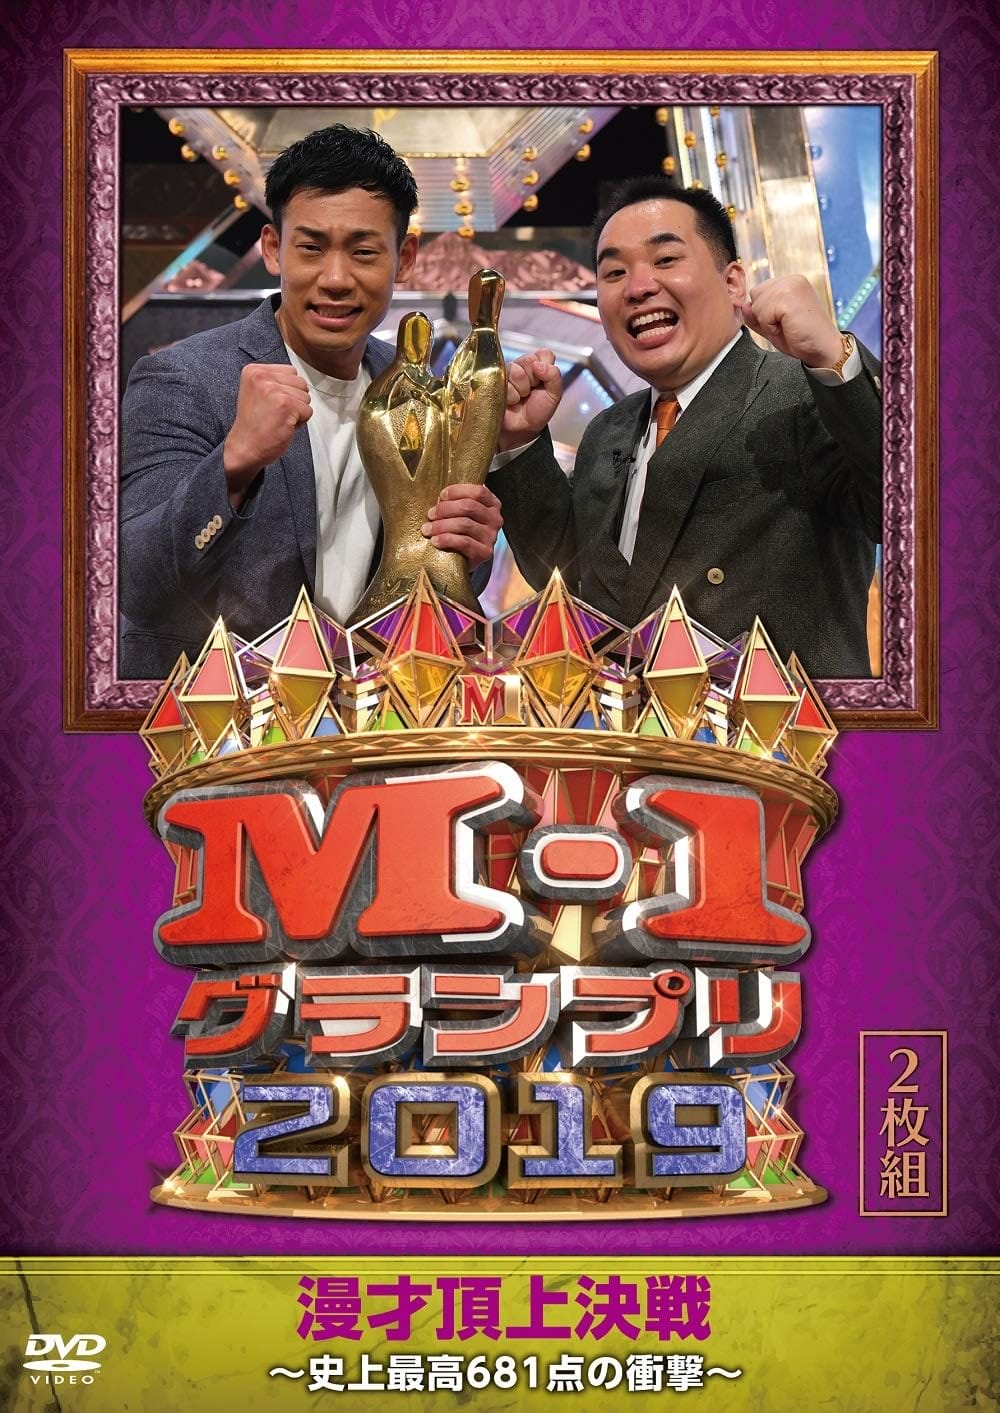 M-1グランプリ2004〜2006 dvd - お笑い・バラエティ